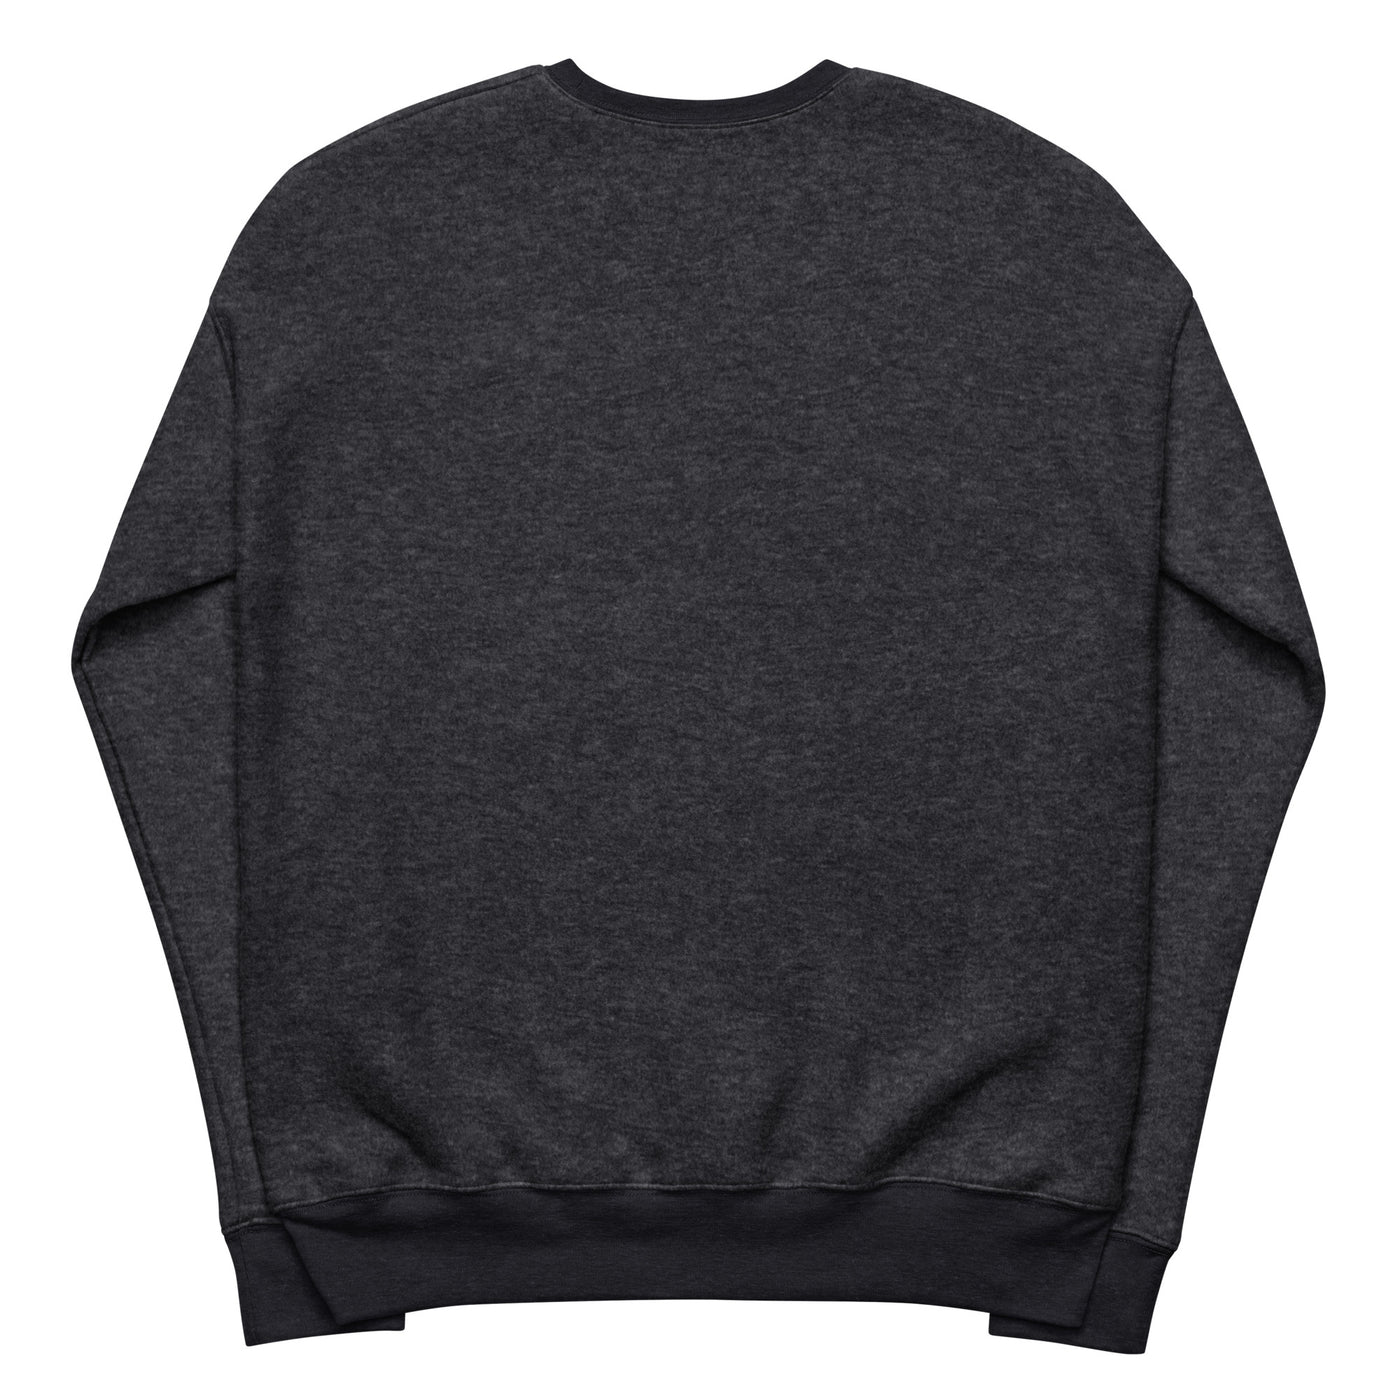 MFAF fleece sweatshirt